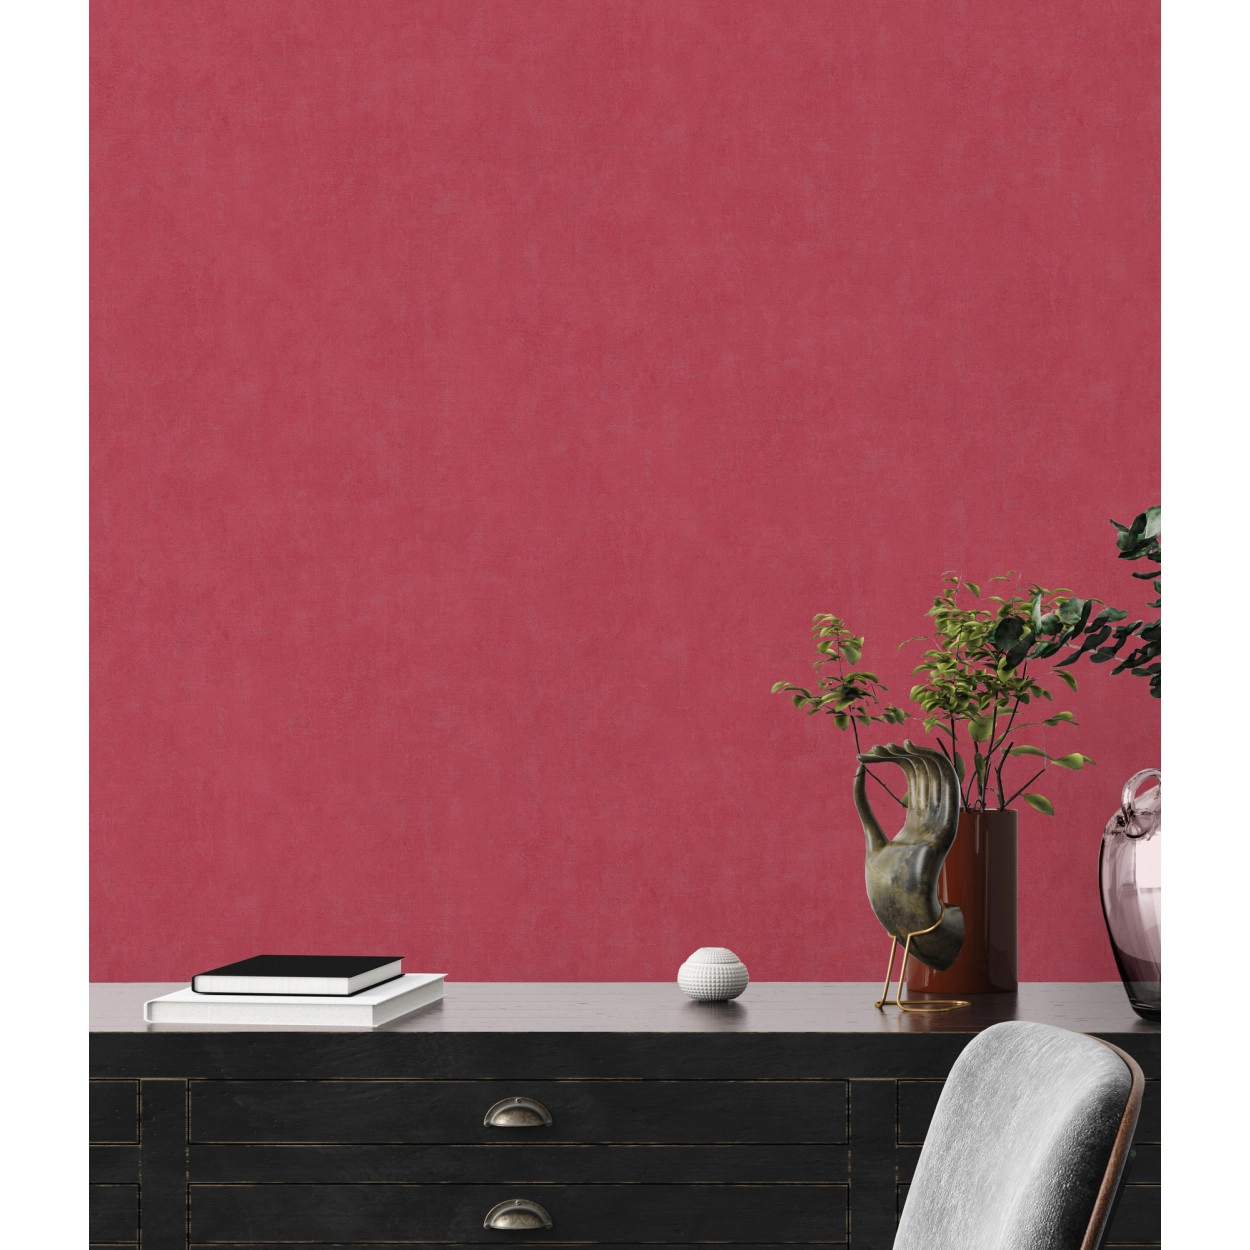 Piros design tapéta enyhén koptatott mosható felülettel